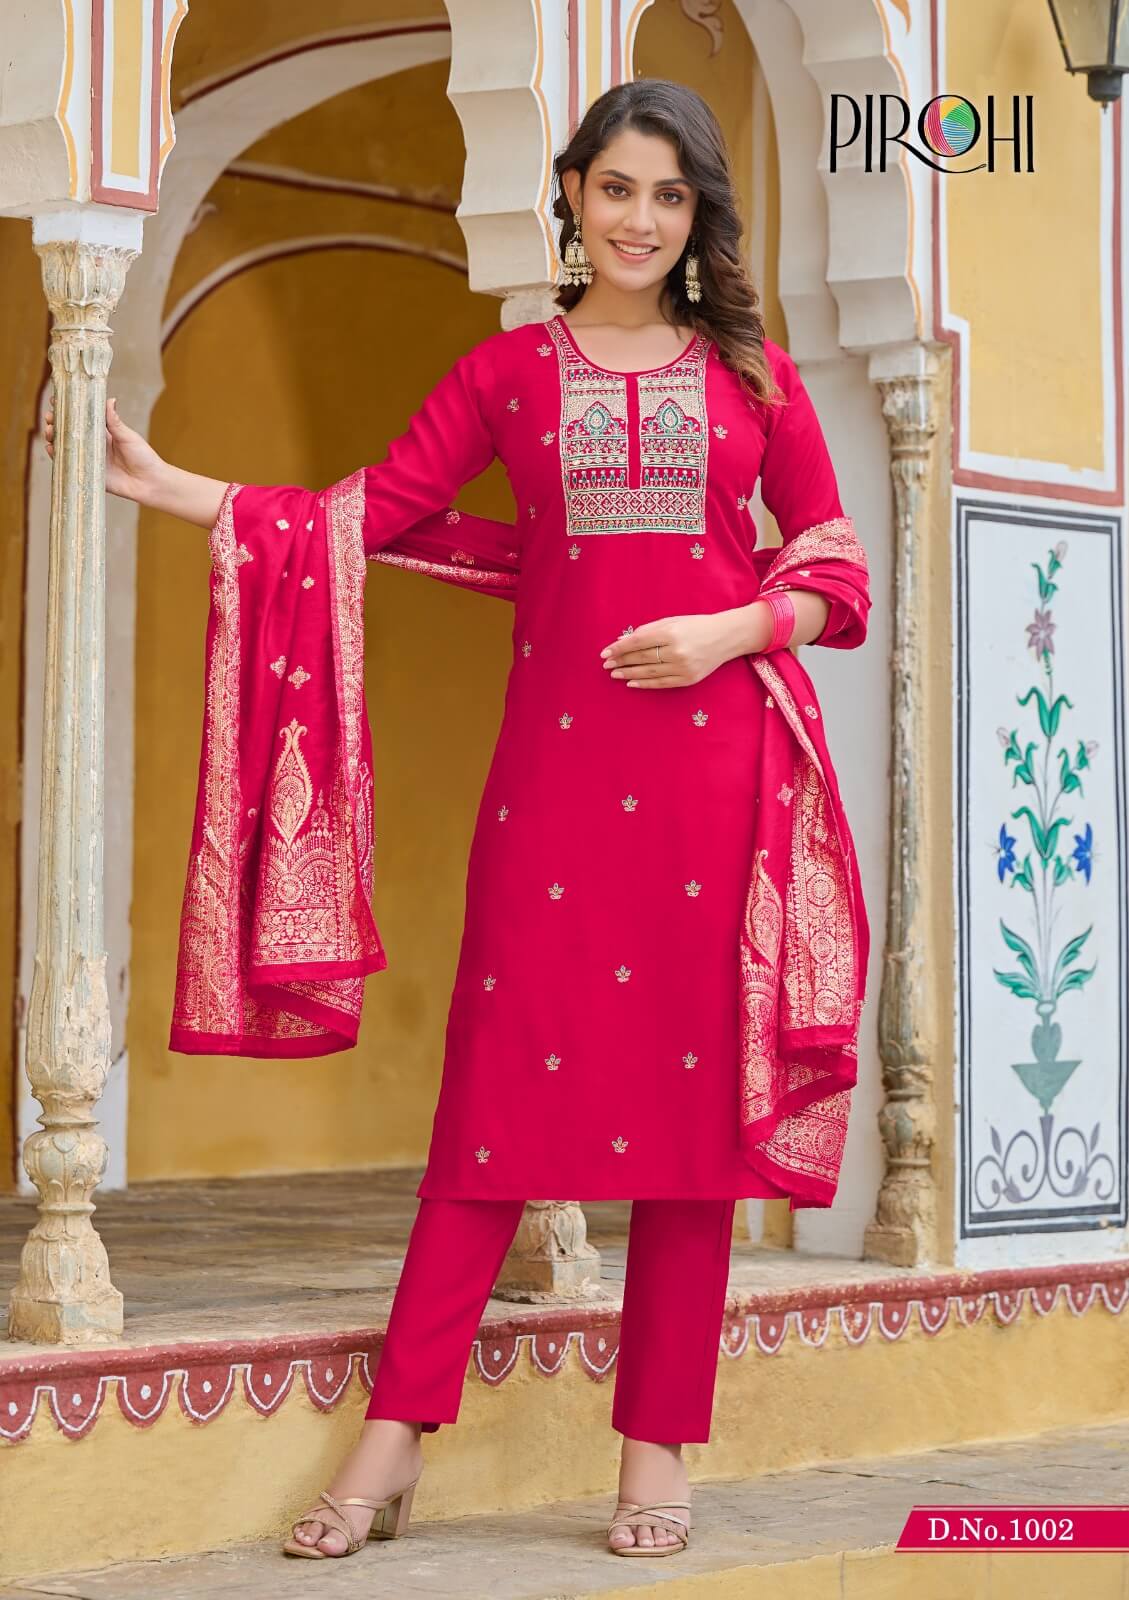 Pirohi By Rajavir Mahiye Readymade Dress Catalog collection 7